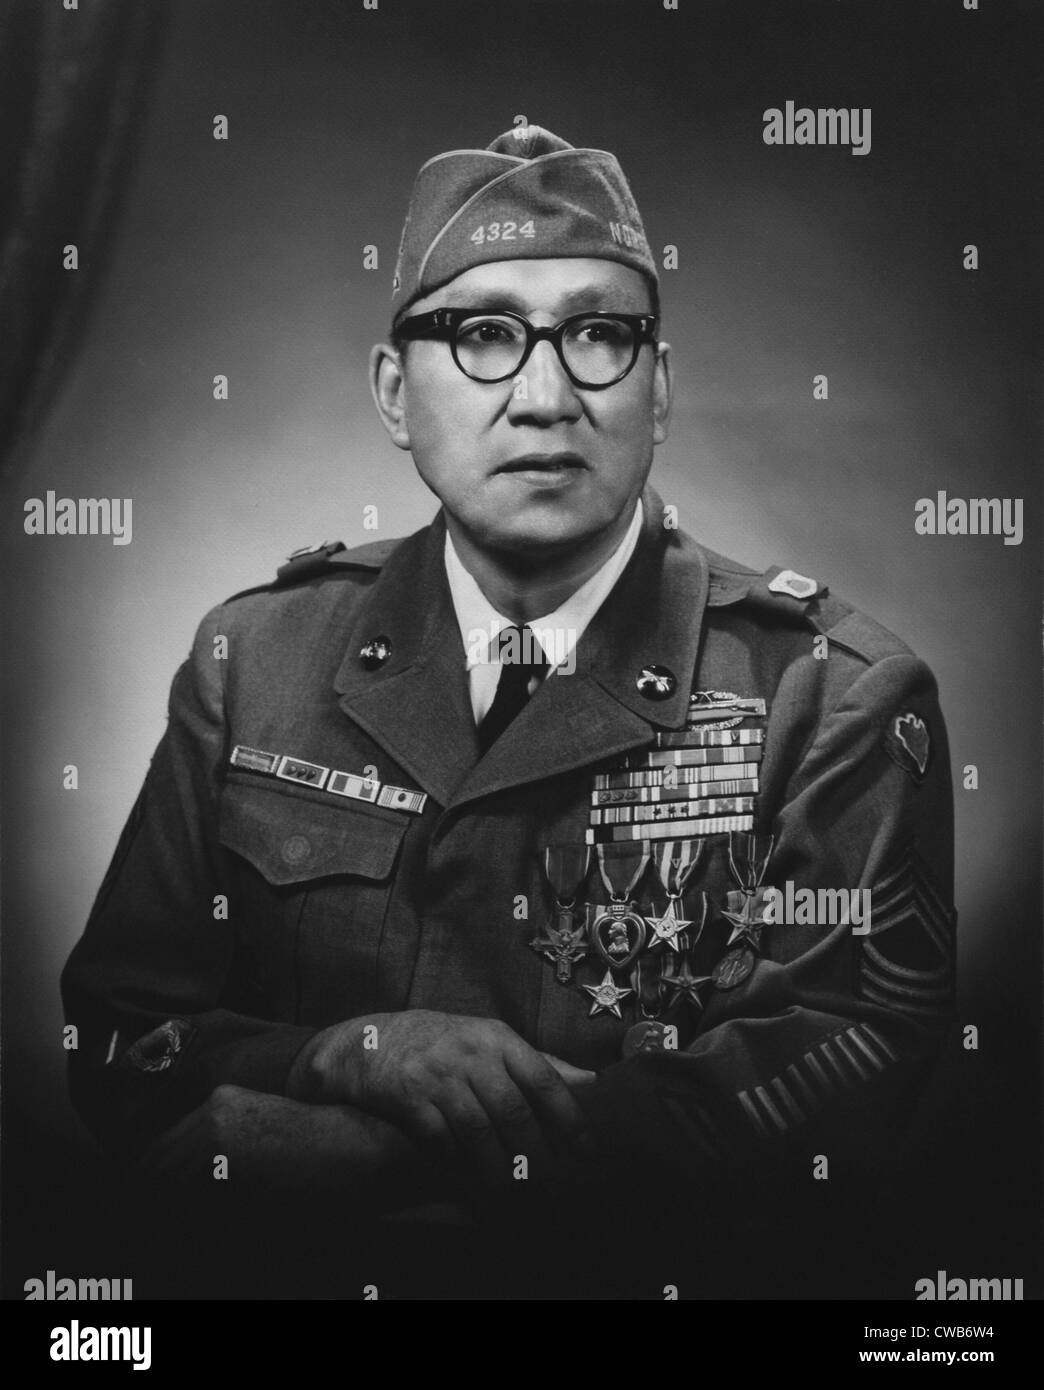 Le sergent-chef de l'armée. Woodrow Keeble. ca. Années 1950 Banque D'Images